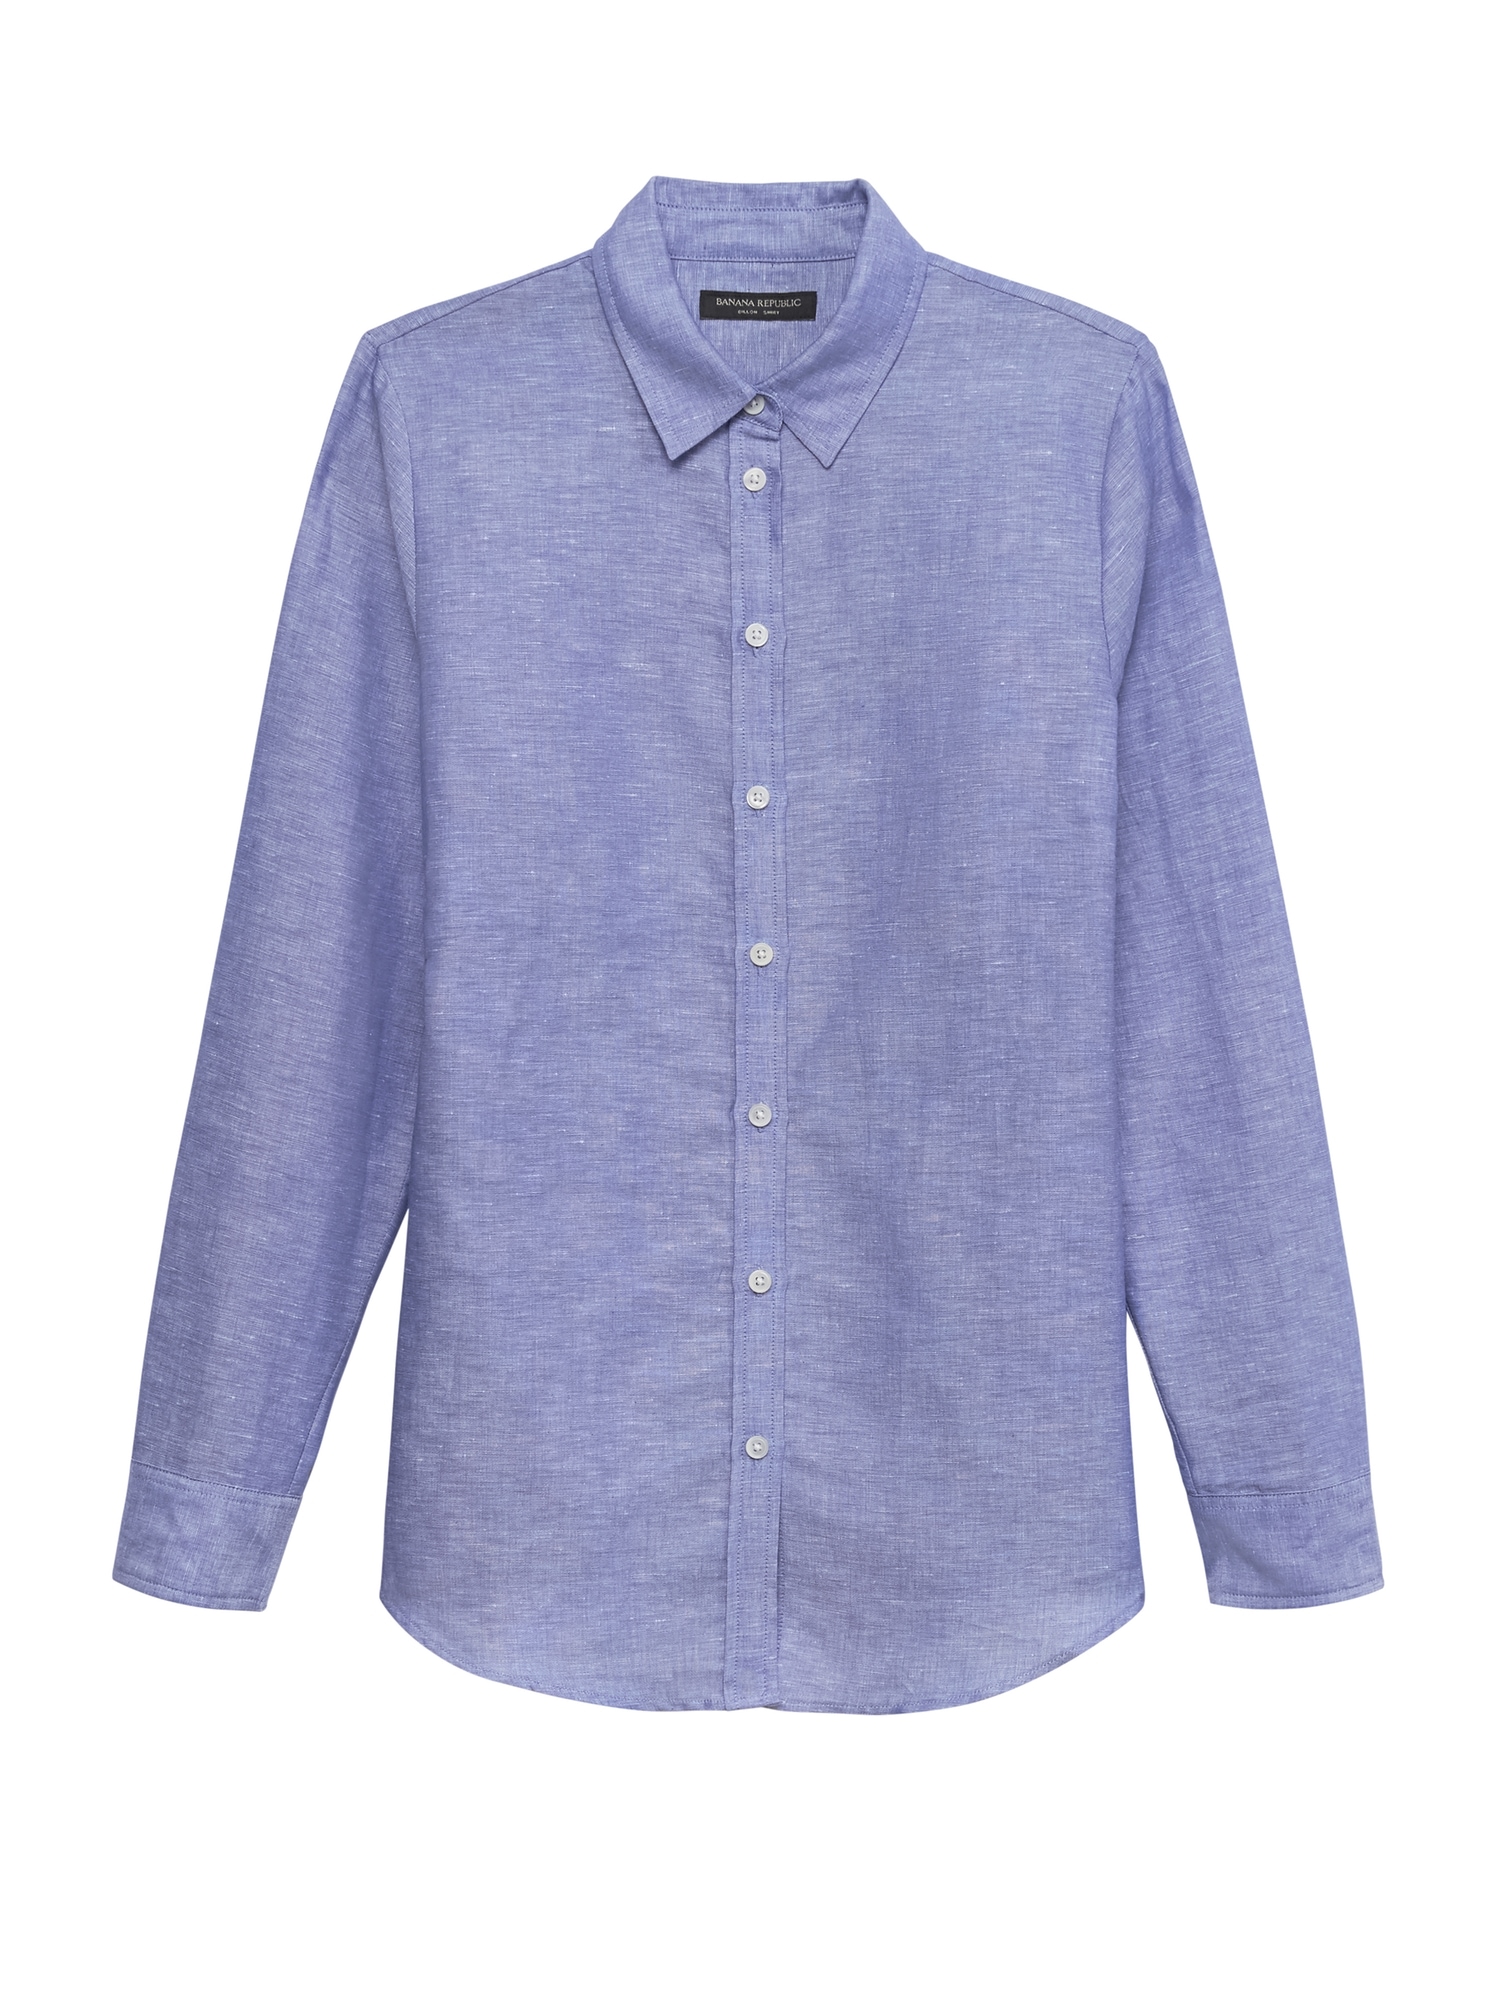 Dillon Classic-Fit Linen-Cotton Shirt